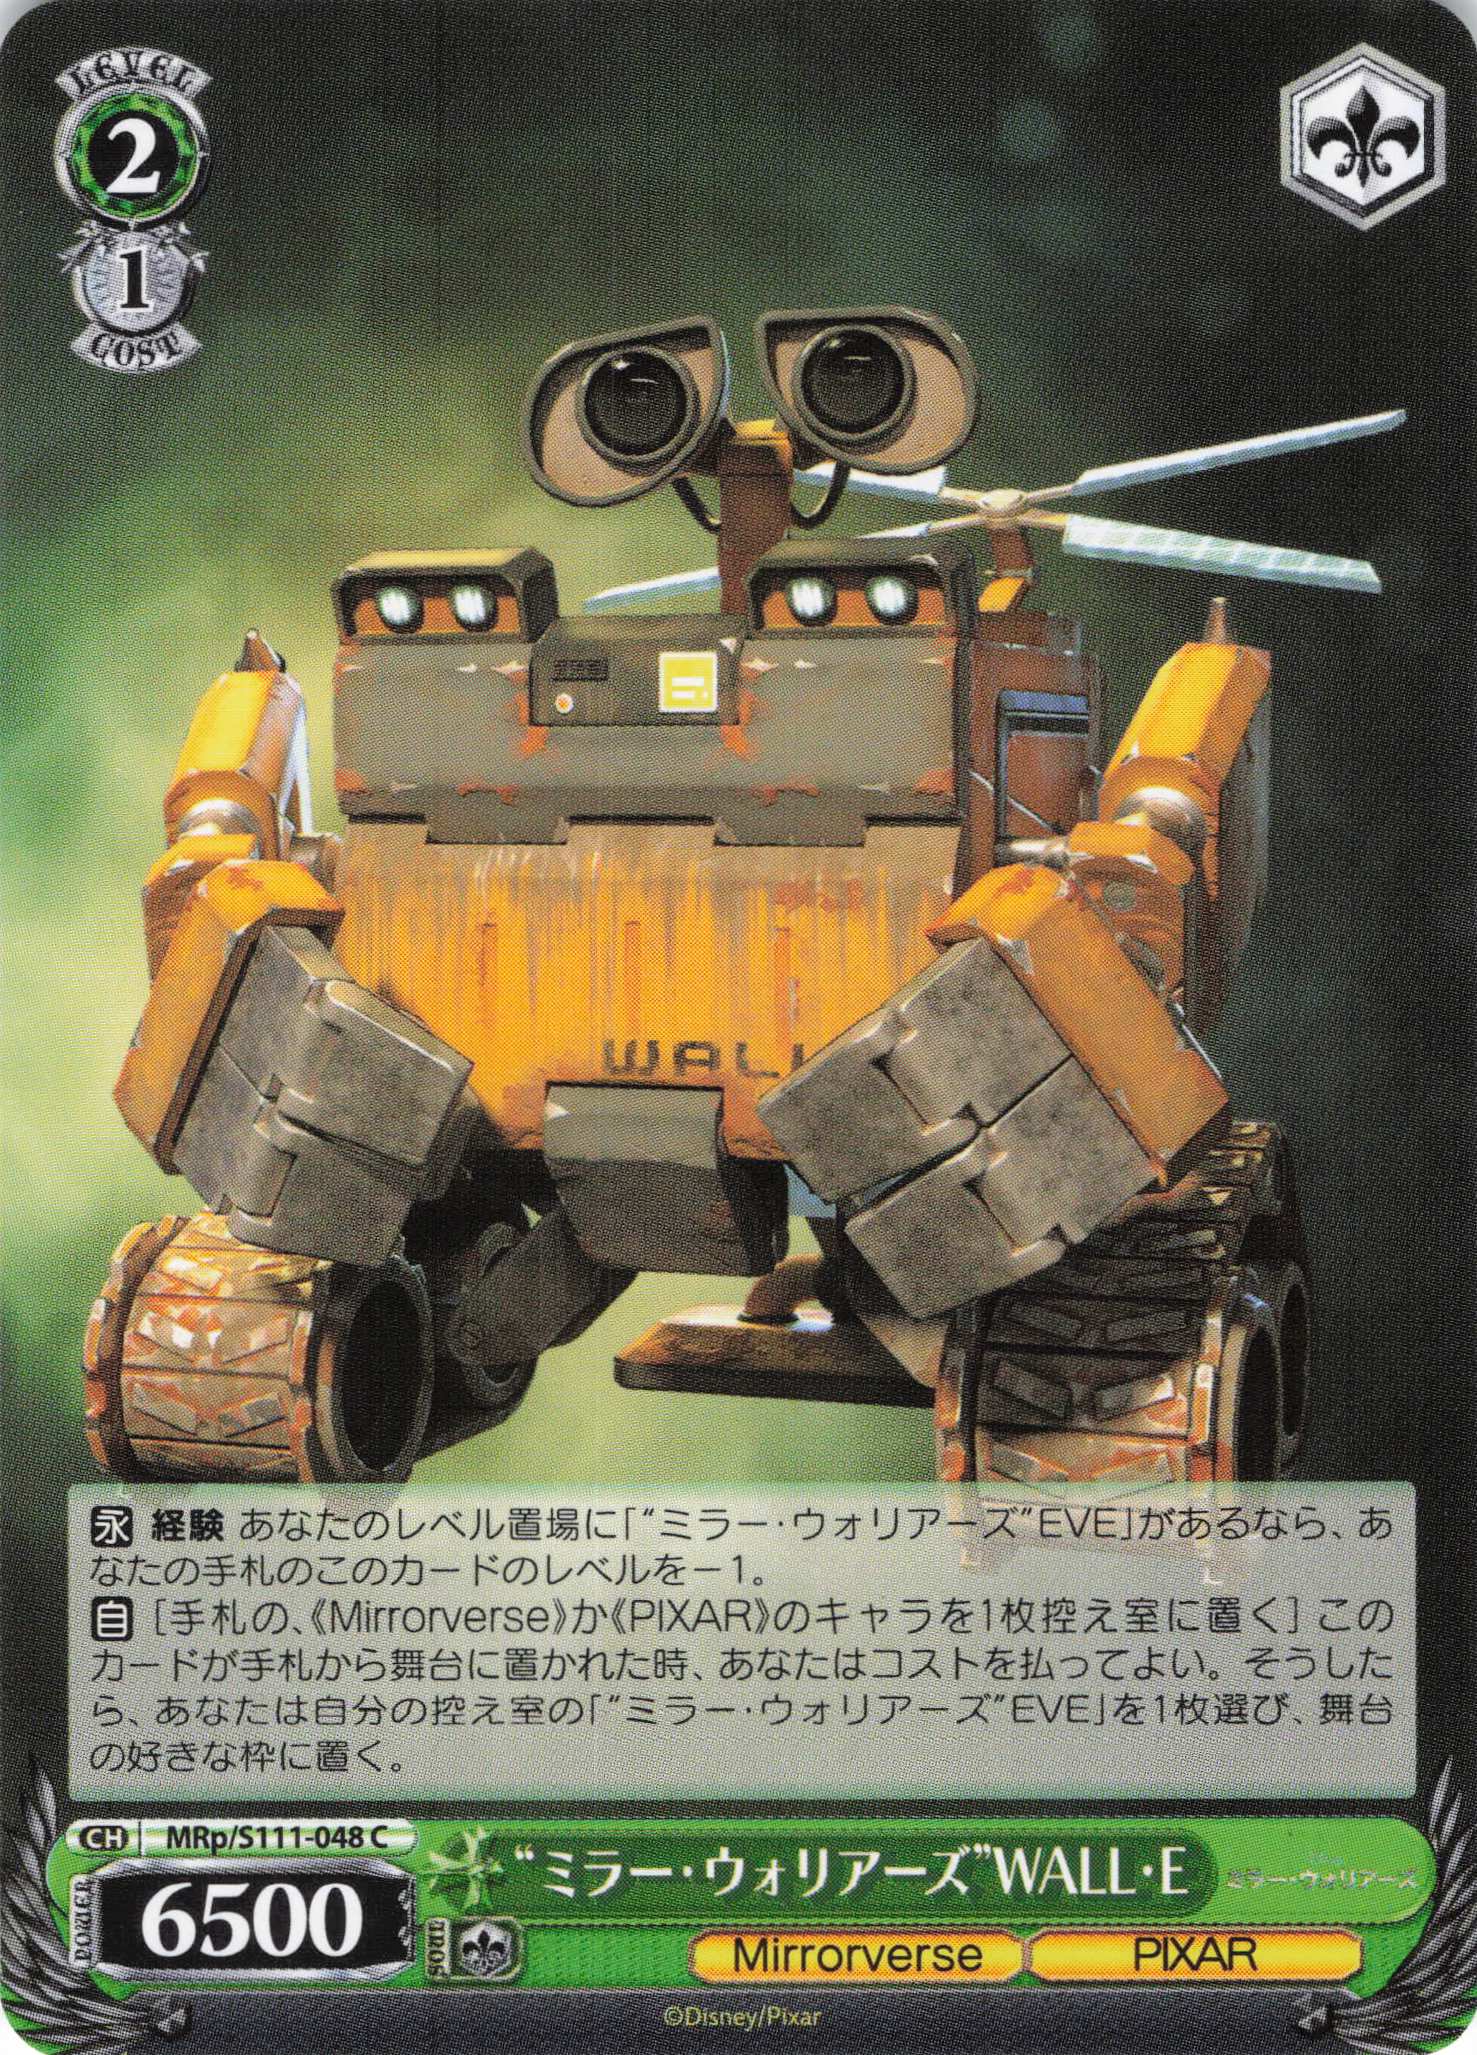 “ミラー・ウォリアーズ”WALL・E(MRp/S111-048)